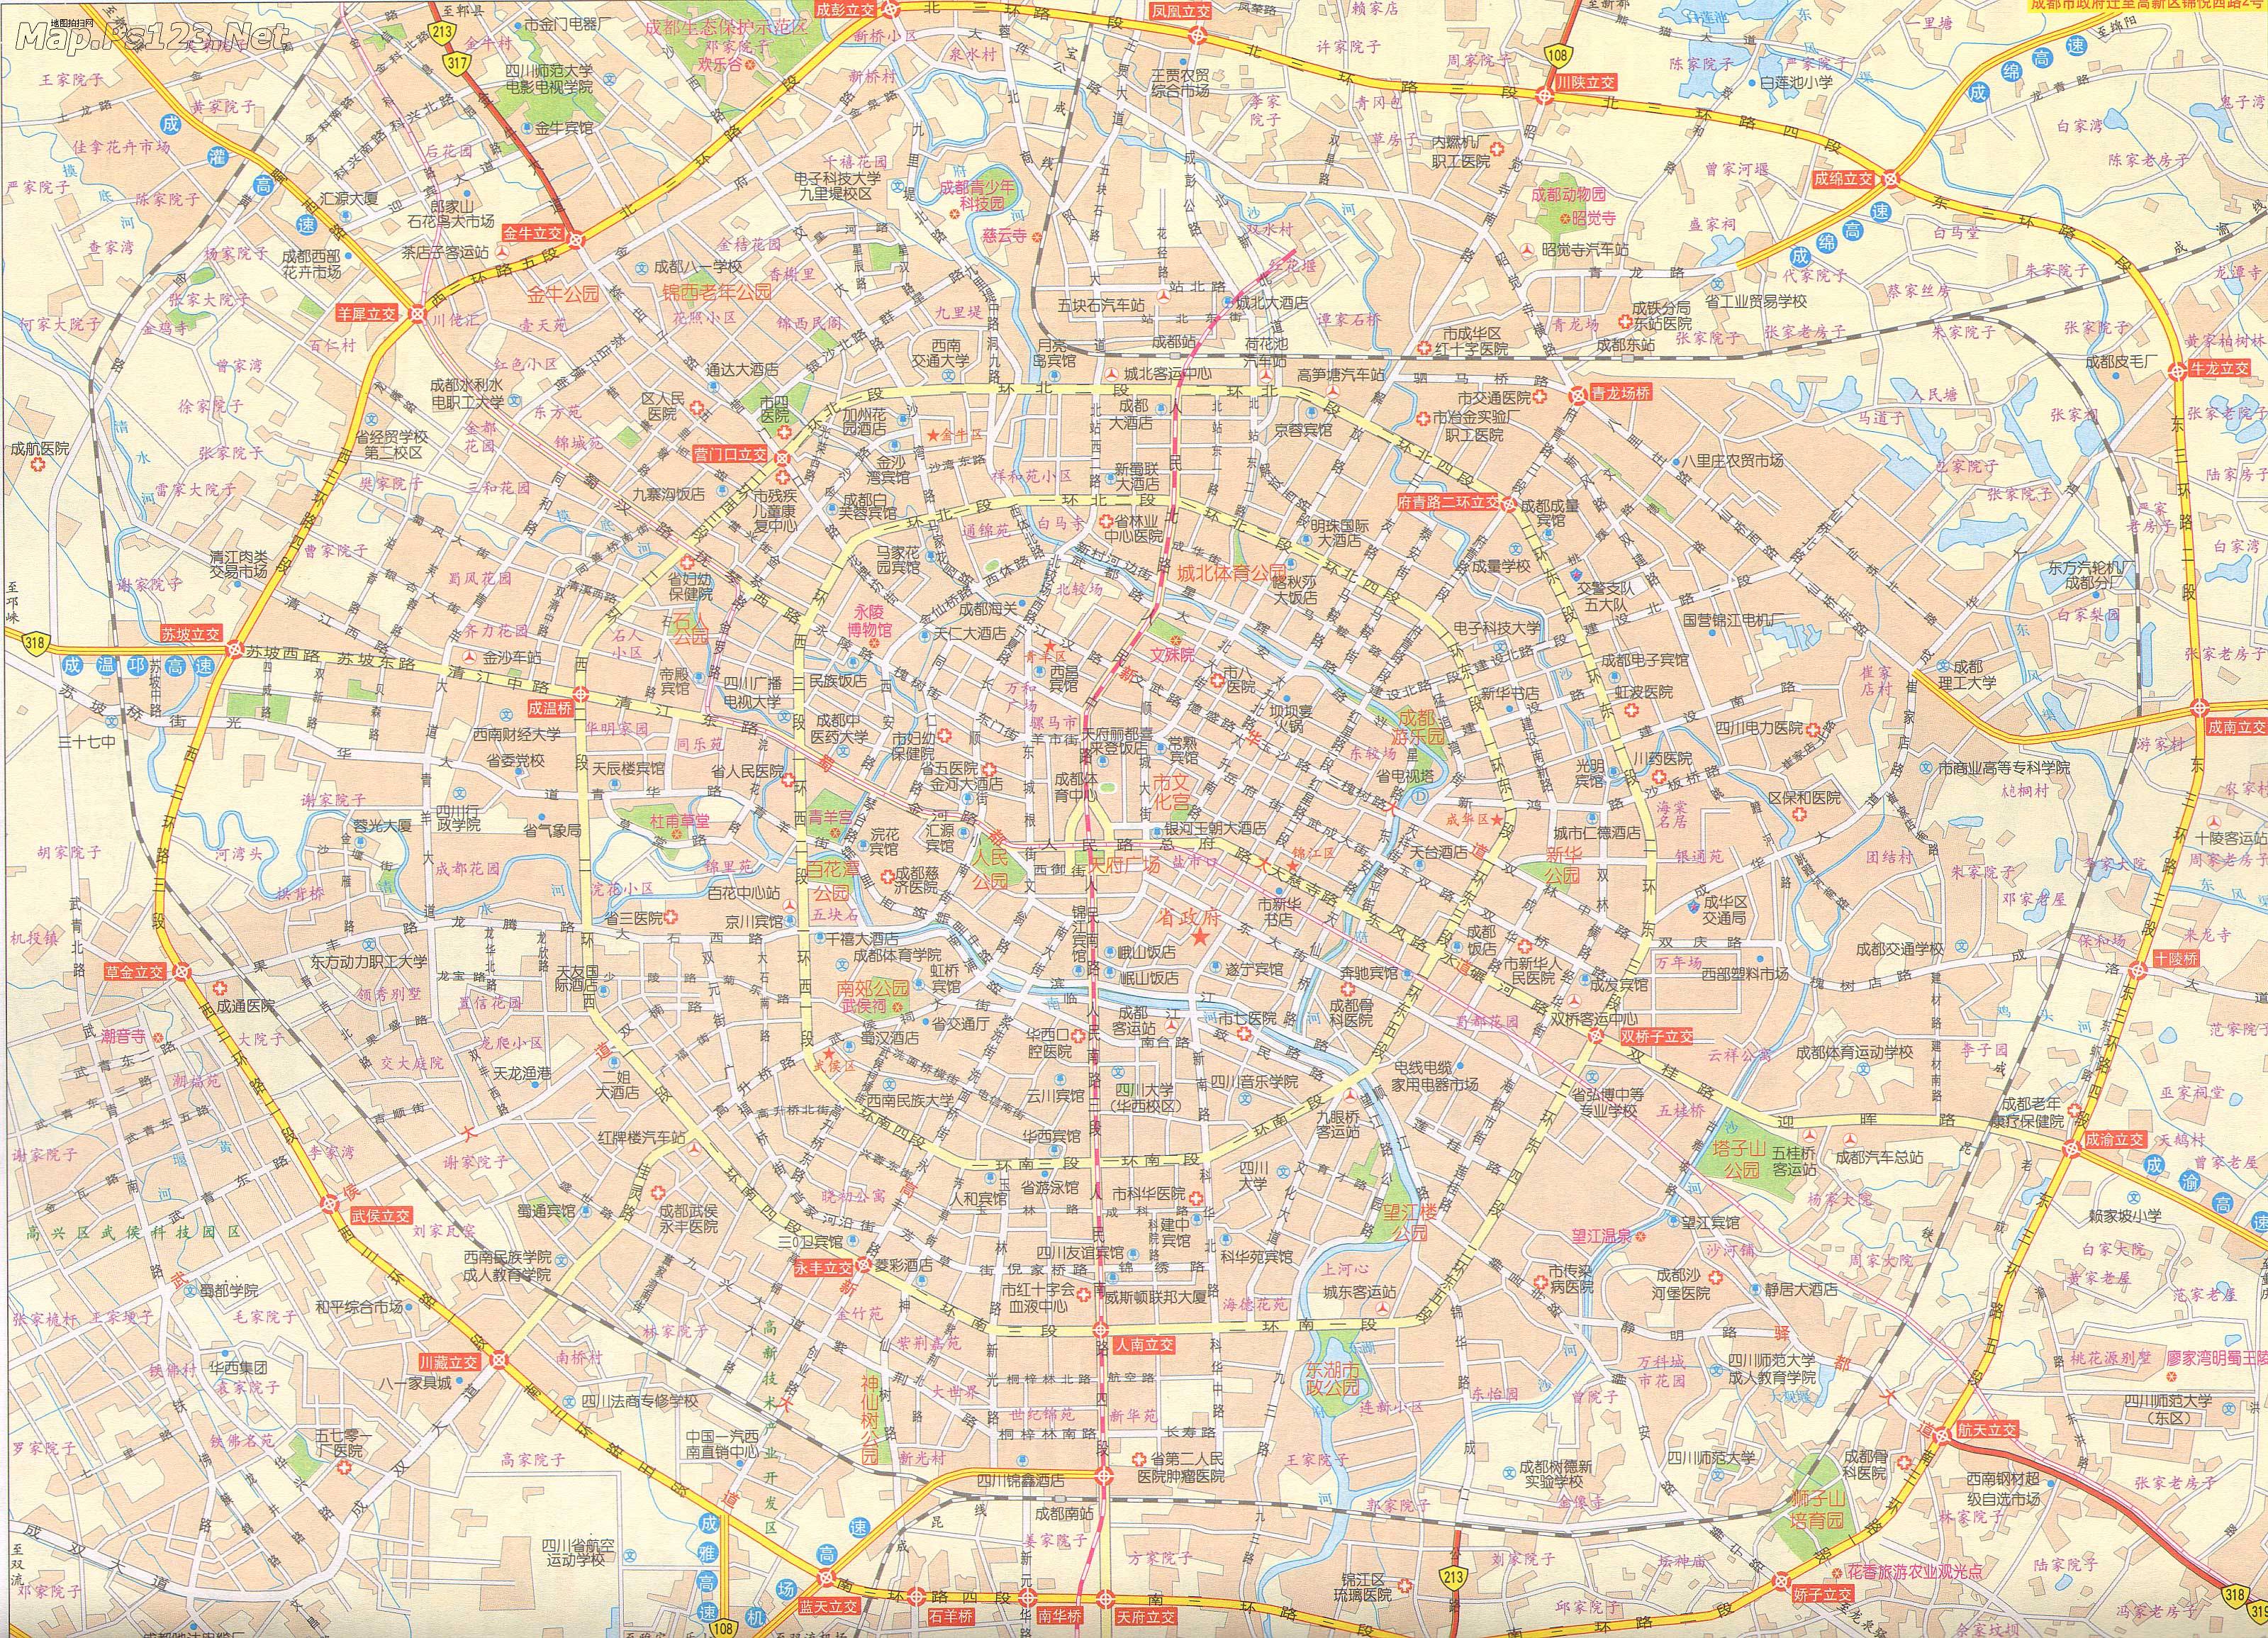 中国地图 四川 成都市 >> 成都市区地图  分类: 成都市 中国城市地图图片